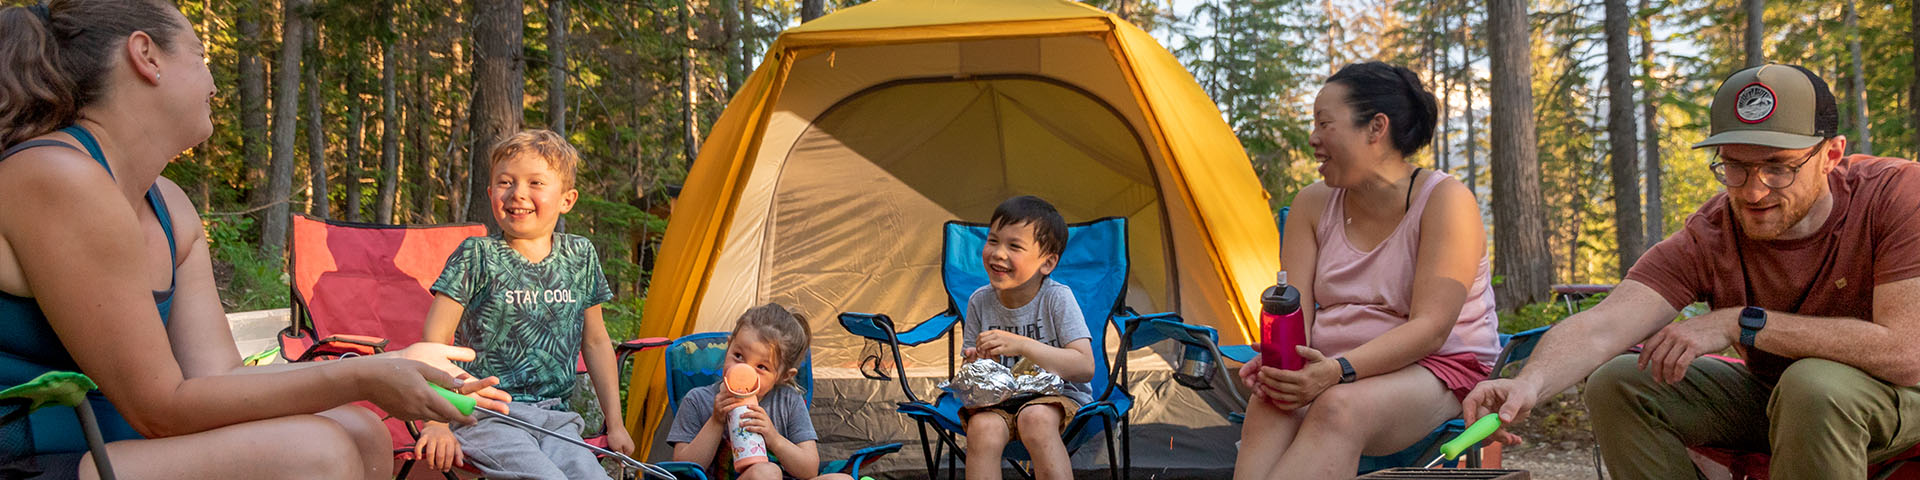 Groupe de 6 avec adultes et enfants assis dans un camping